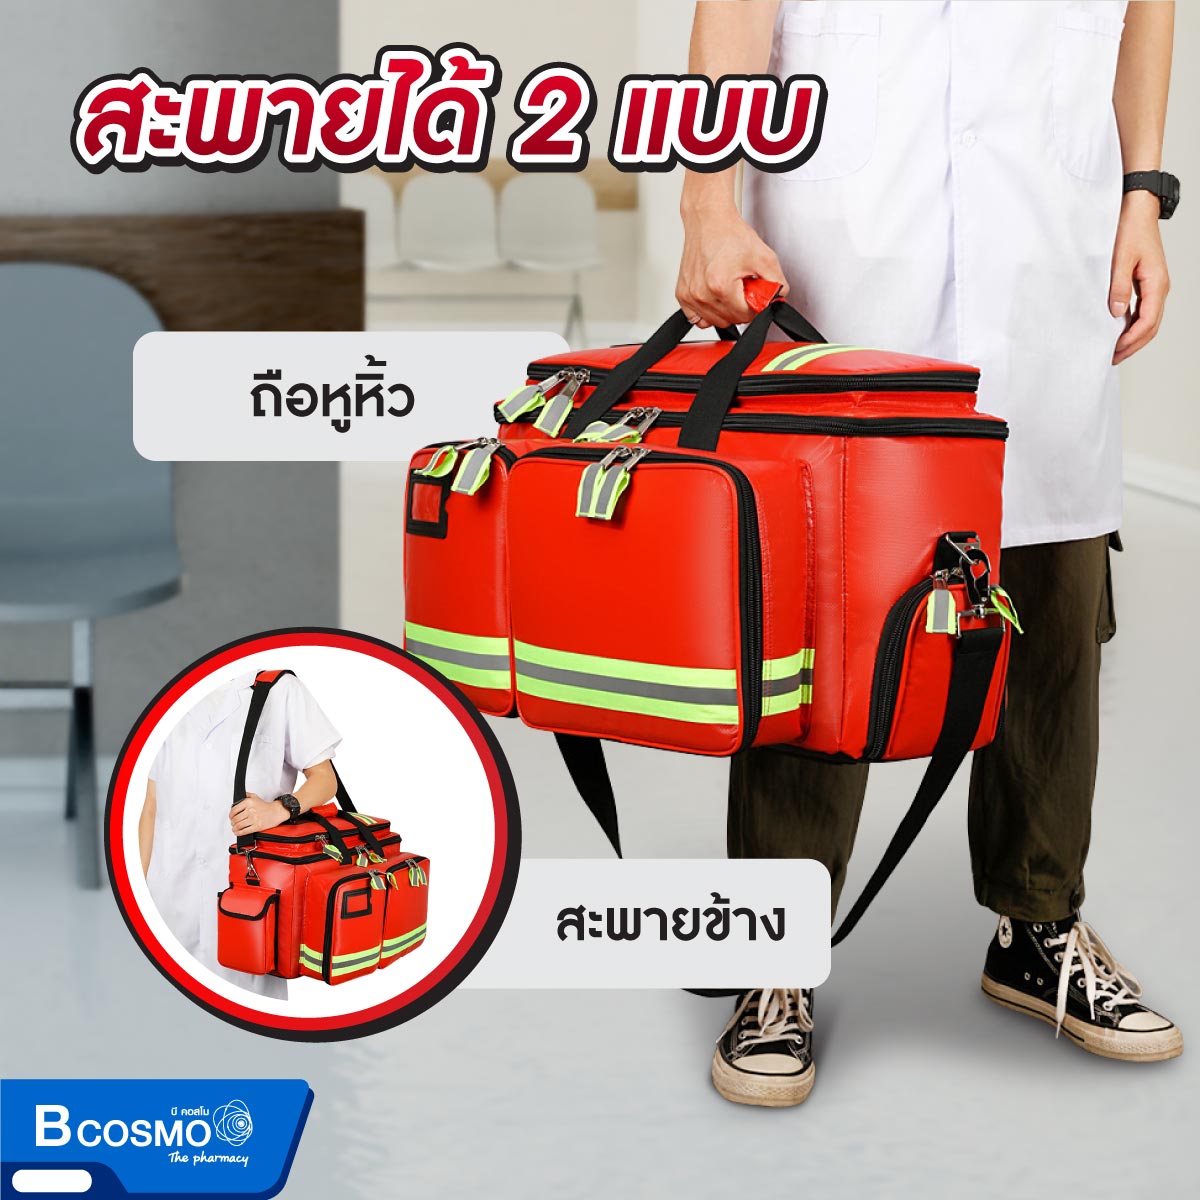 กระเป๋าพยาบาลฉุกเฉินแบบกระเป๋าถือ สายสะพายใหญ่ มี 2 ช่องซิป ขาด 61x37x24 cm.